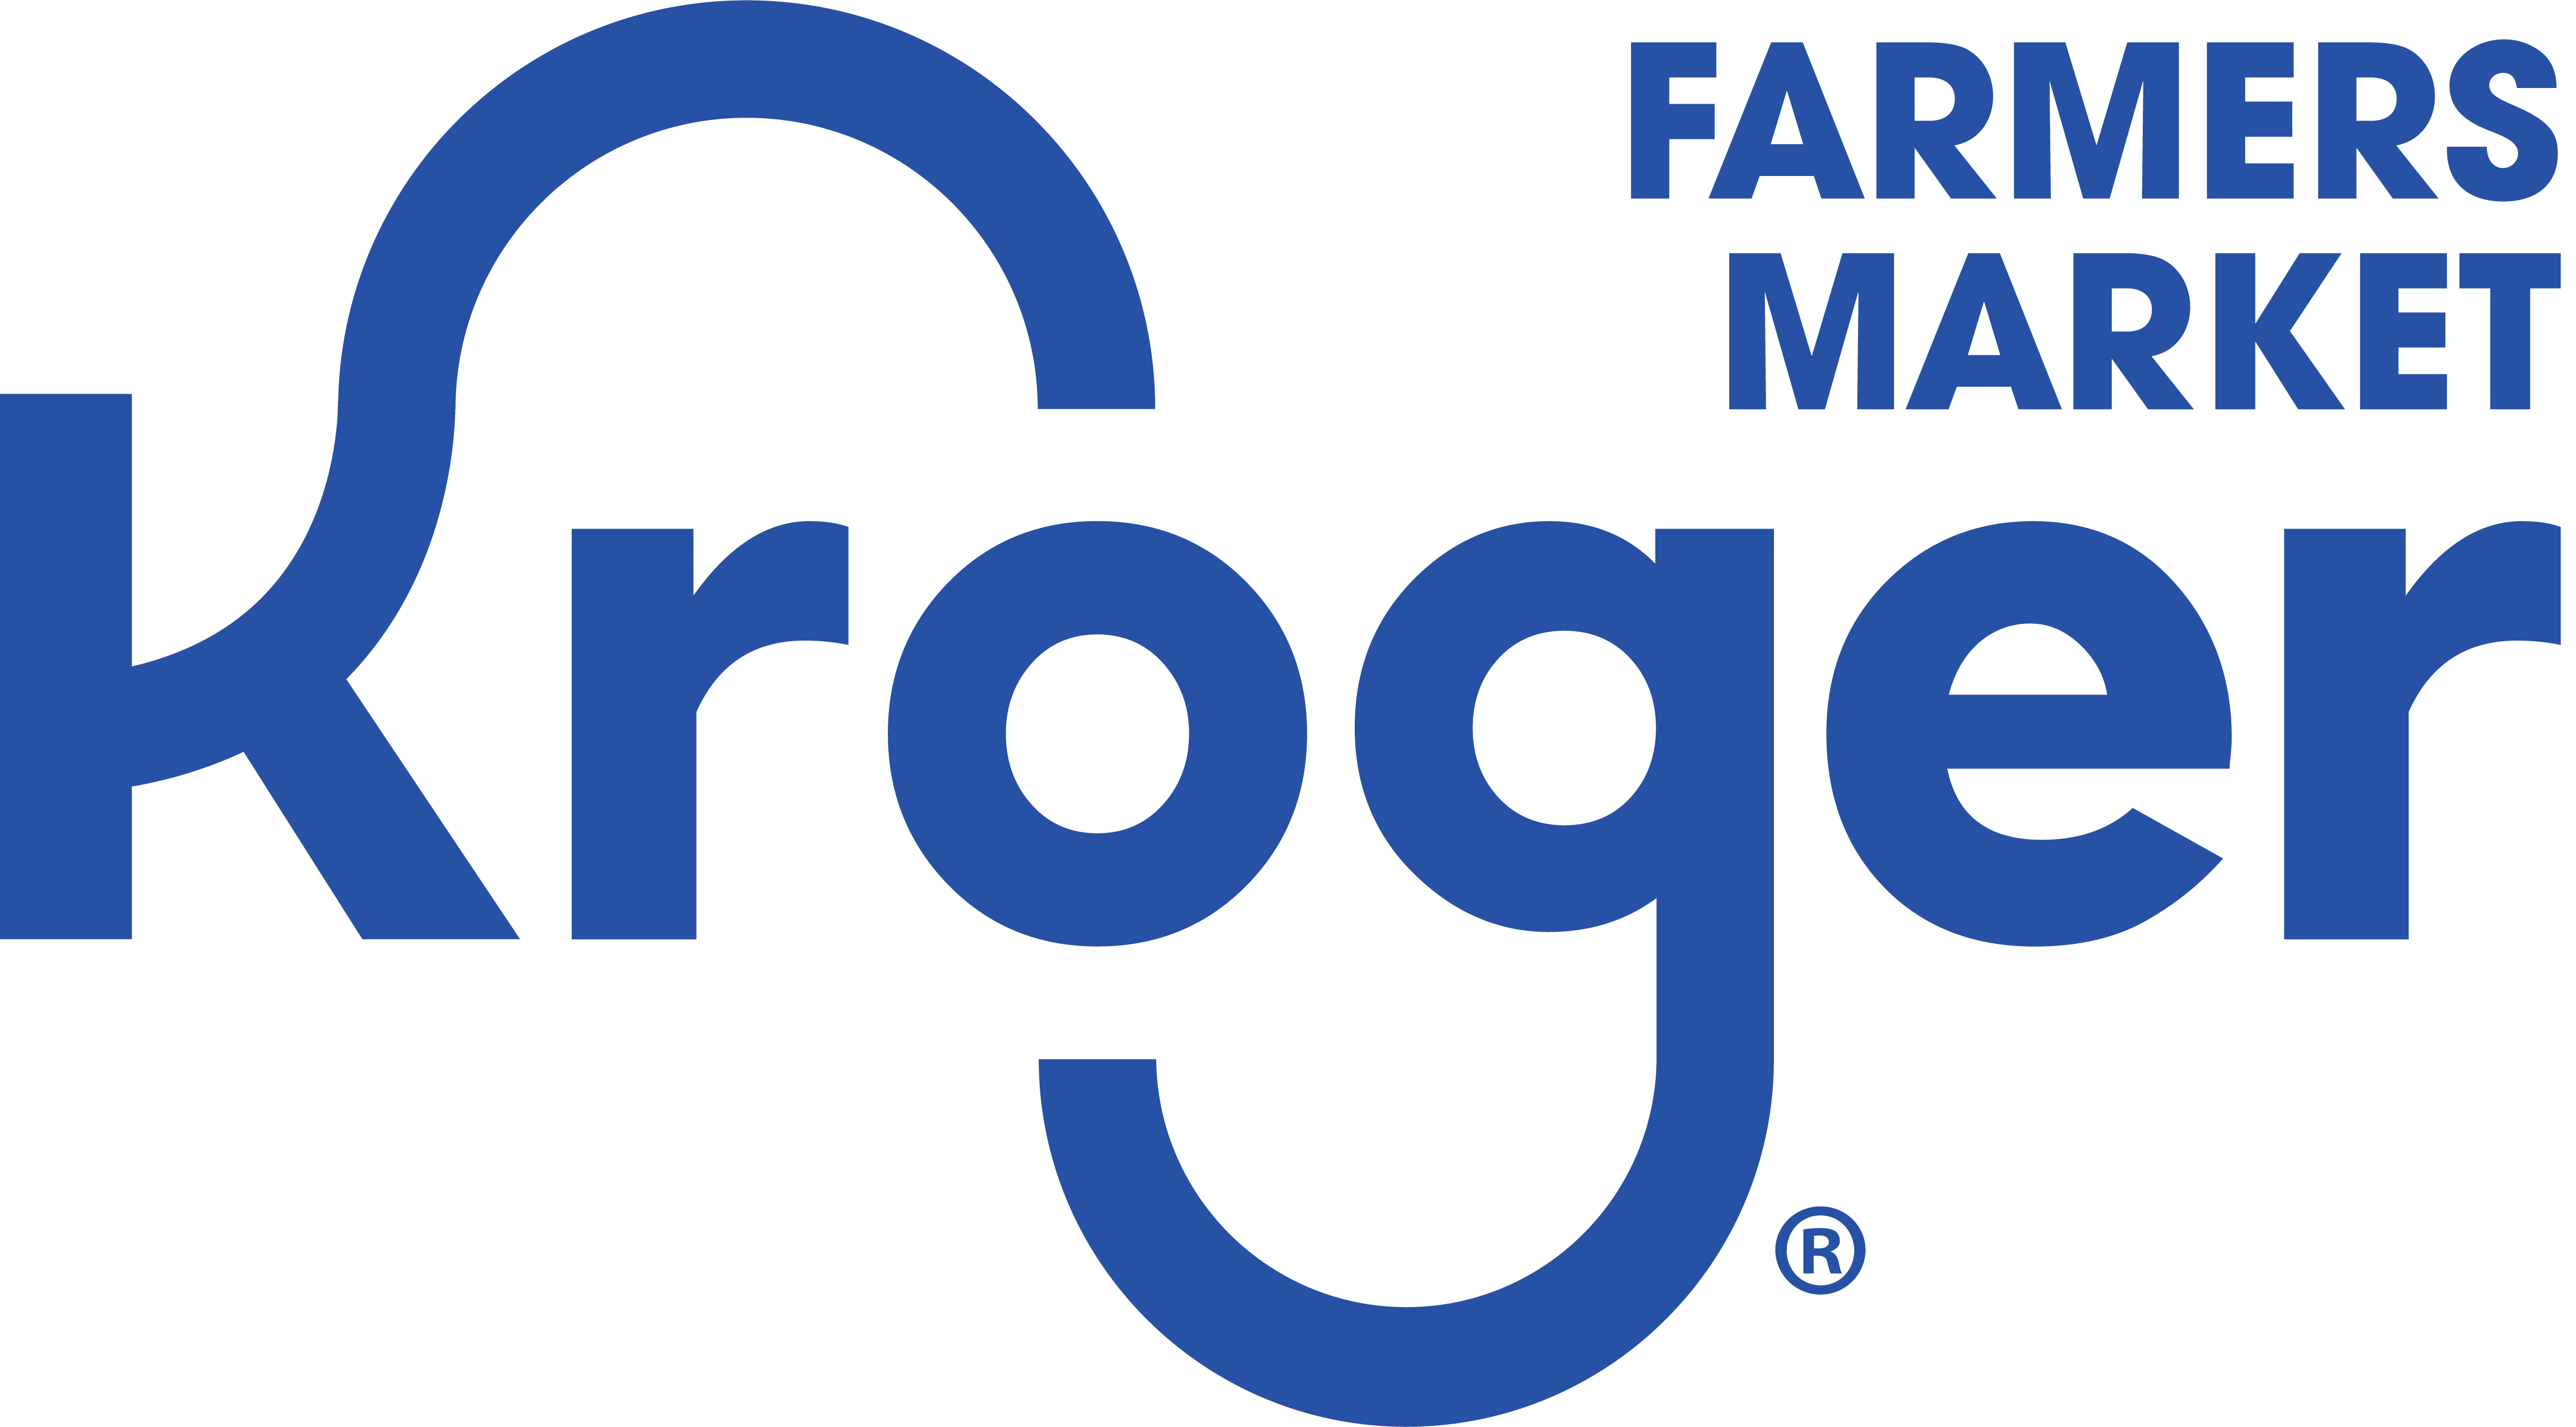 Kroger Online Farmers Market - Powered By Market Wagon